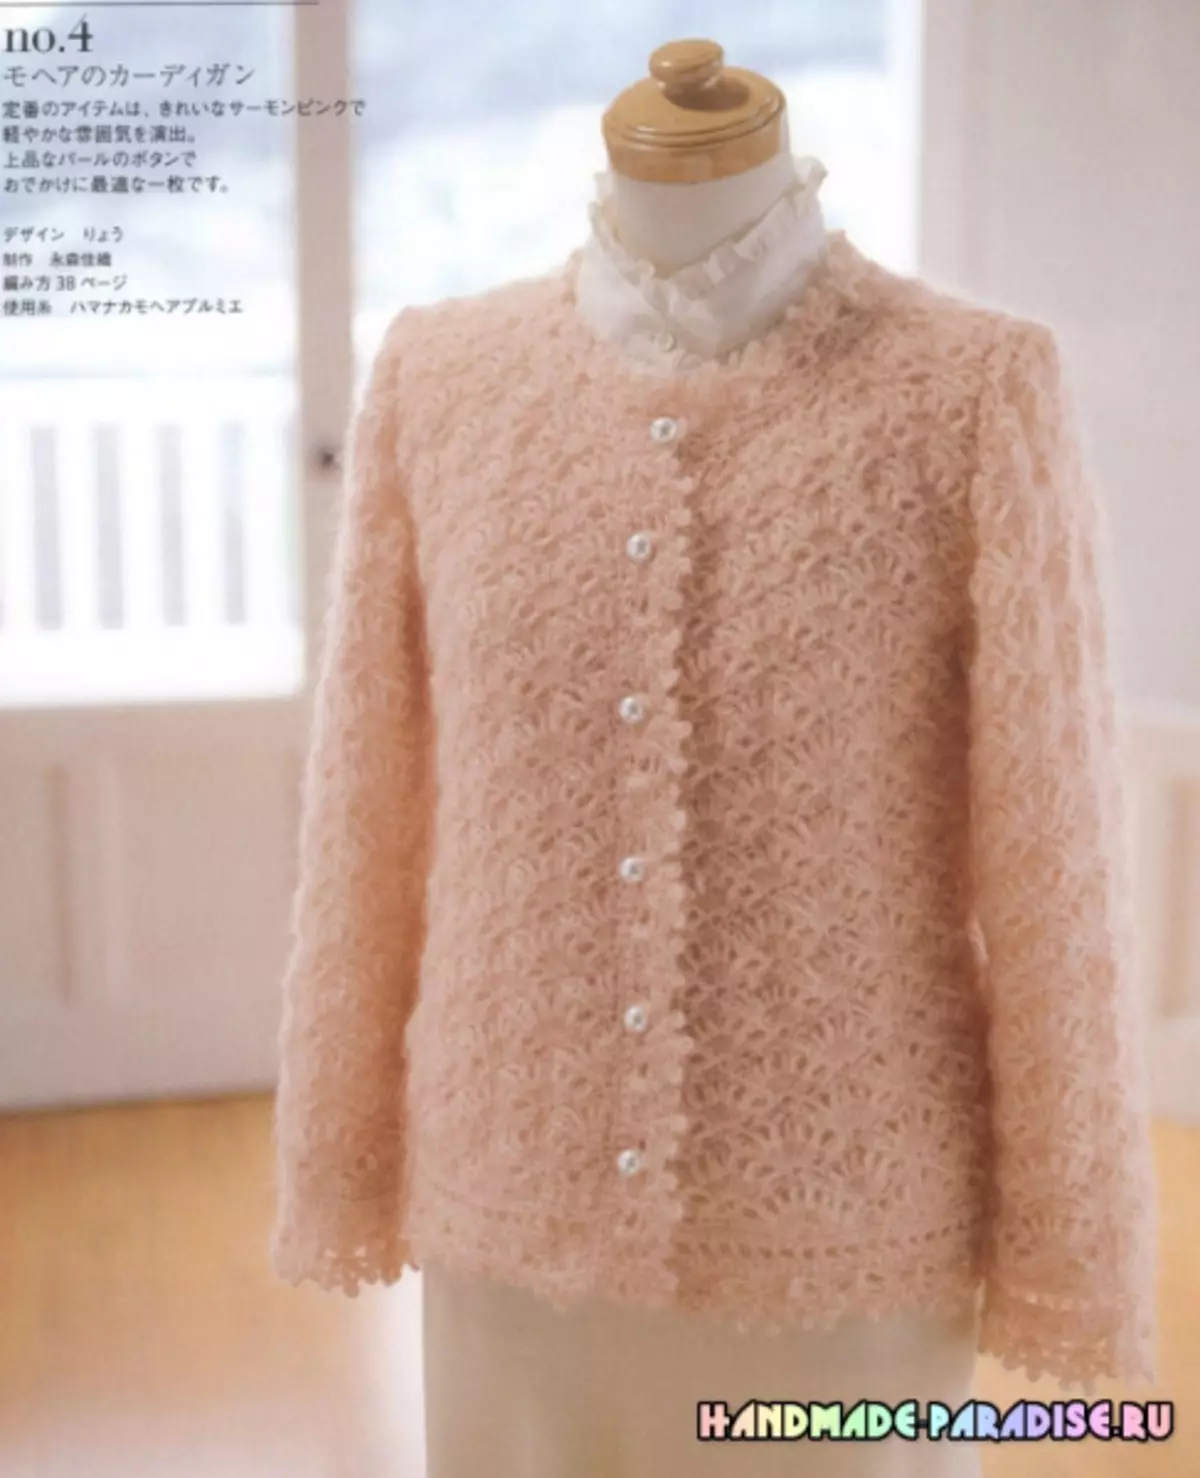 Stylish Knitting токуу. Япониянын журналы схемалары менен